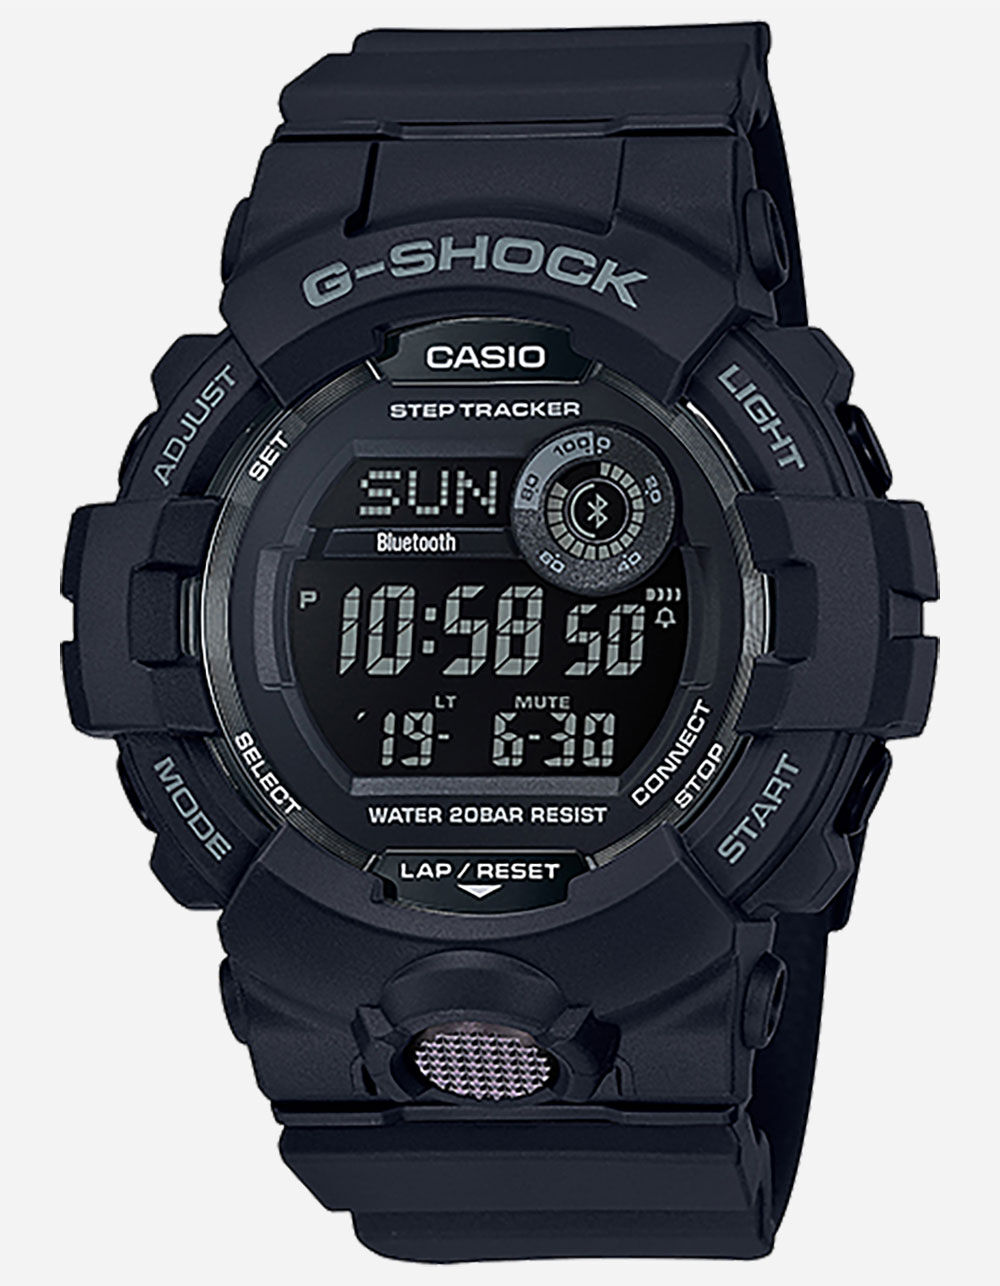 G-SHOCK GBD-800-1B Black Watch